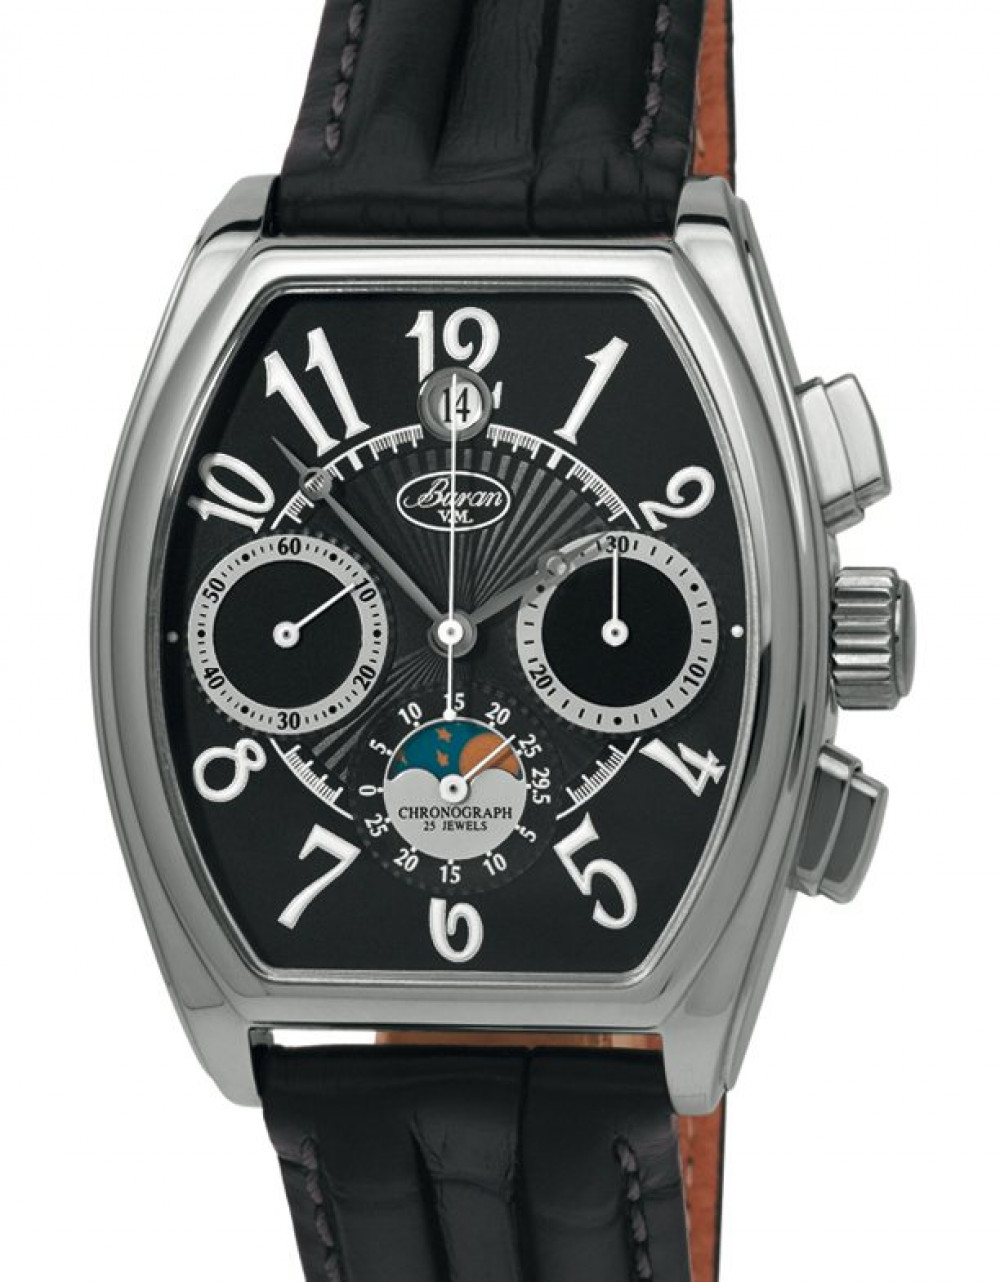 Zegarek firmy Buran Swiss made, model Buran Chronograph Mondkalender